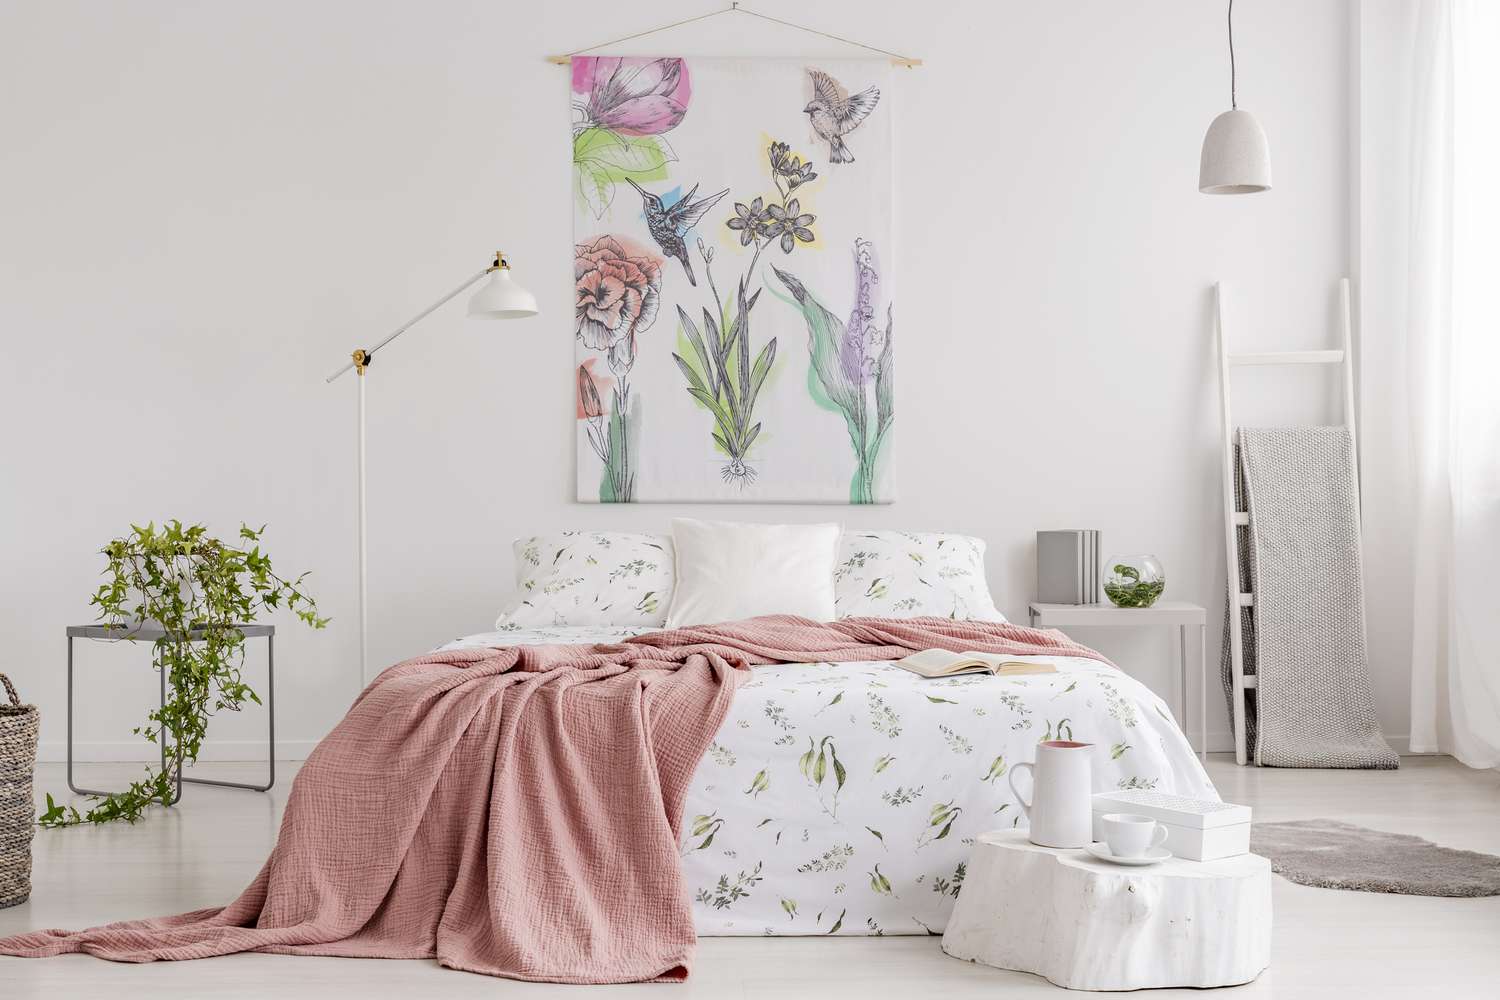 Couverture pêche et blanc avec motif vert lin sur le lit dans un intérieur de chambre naturelle et lumineuse. Tapisserie avec des fleurs colorées et des colibris sur le mur du fond.